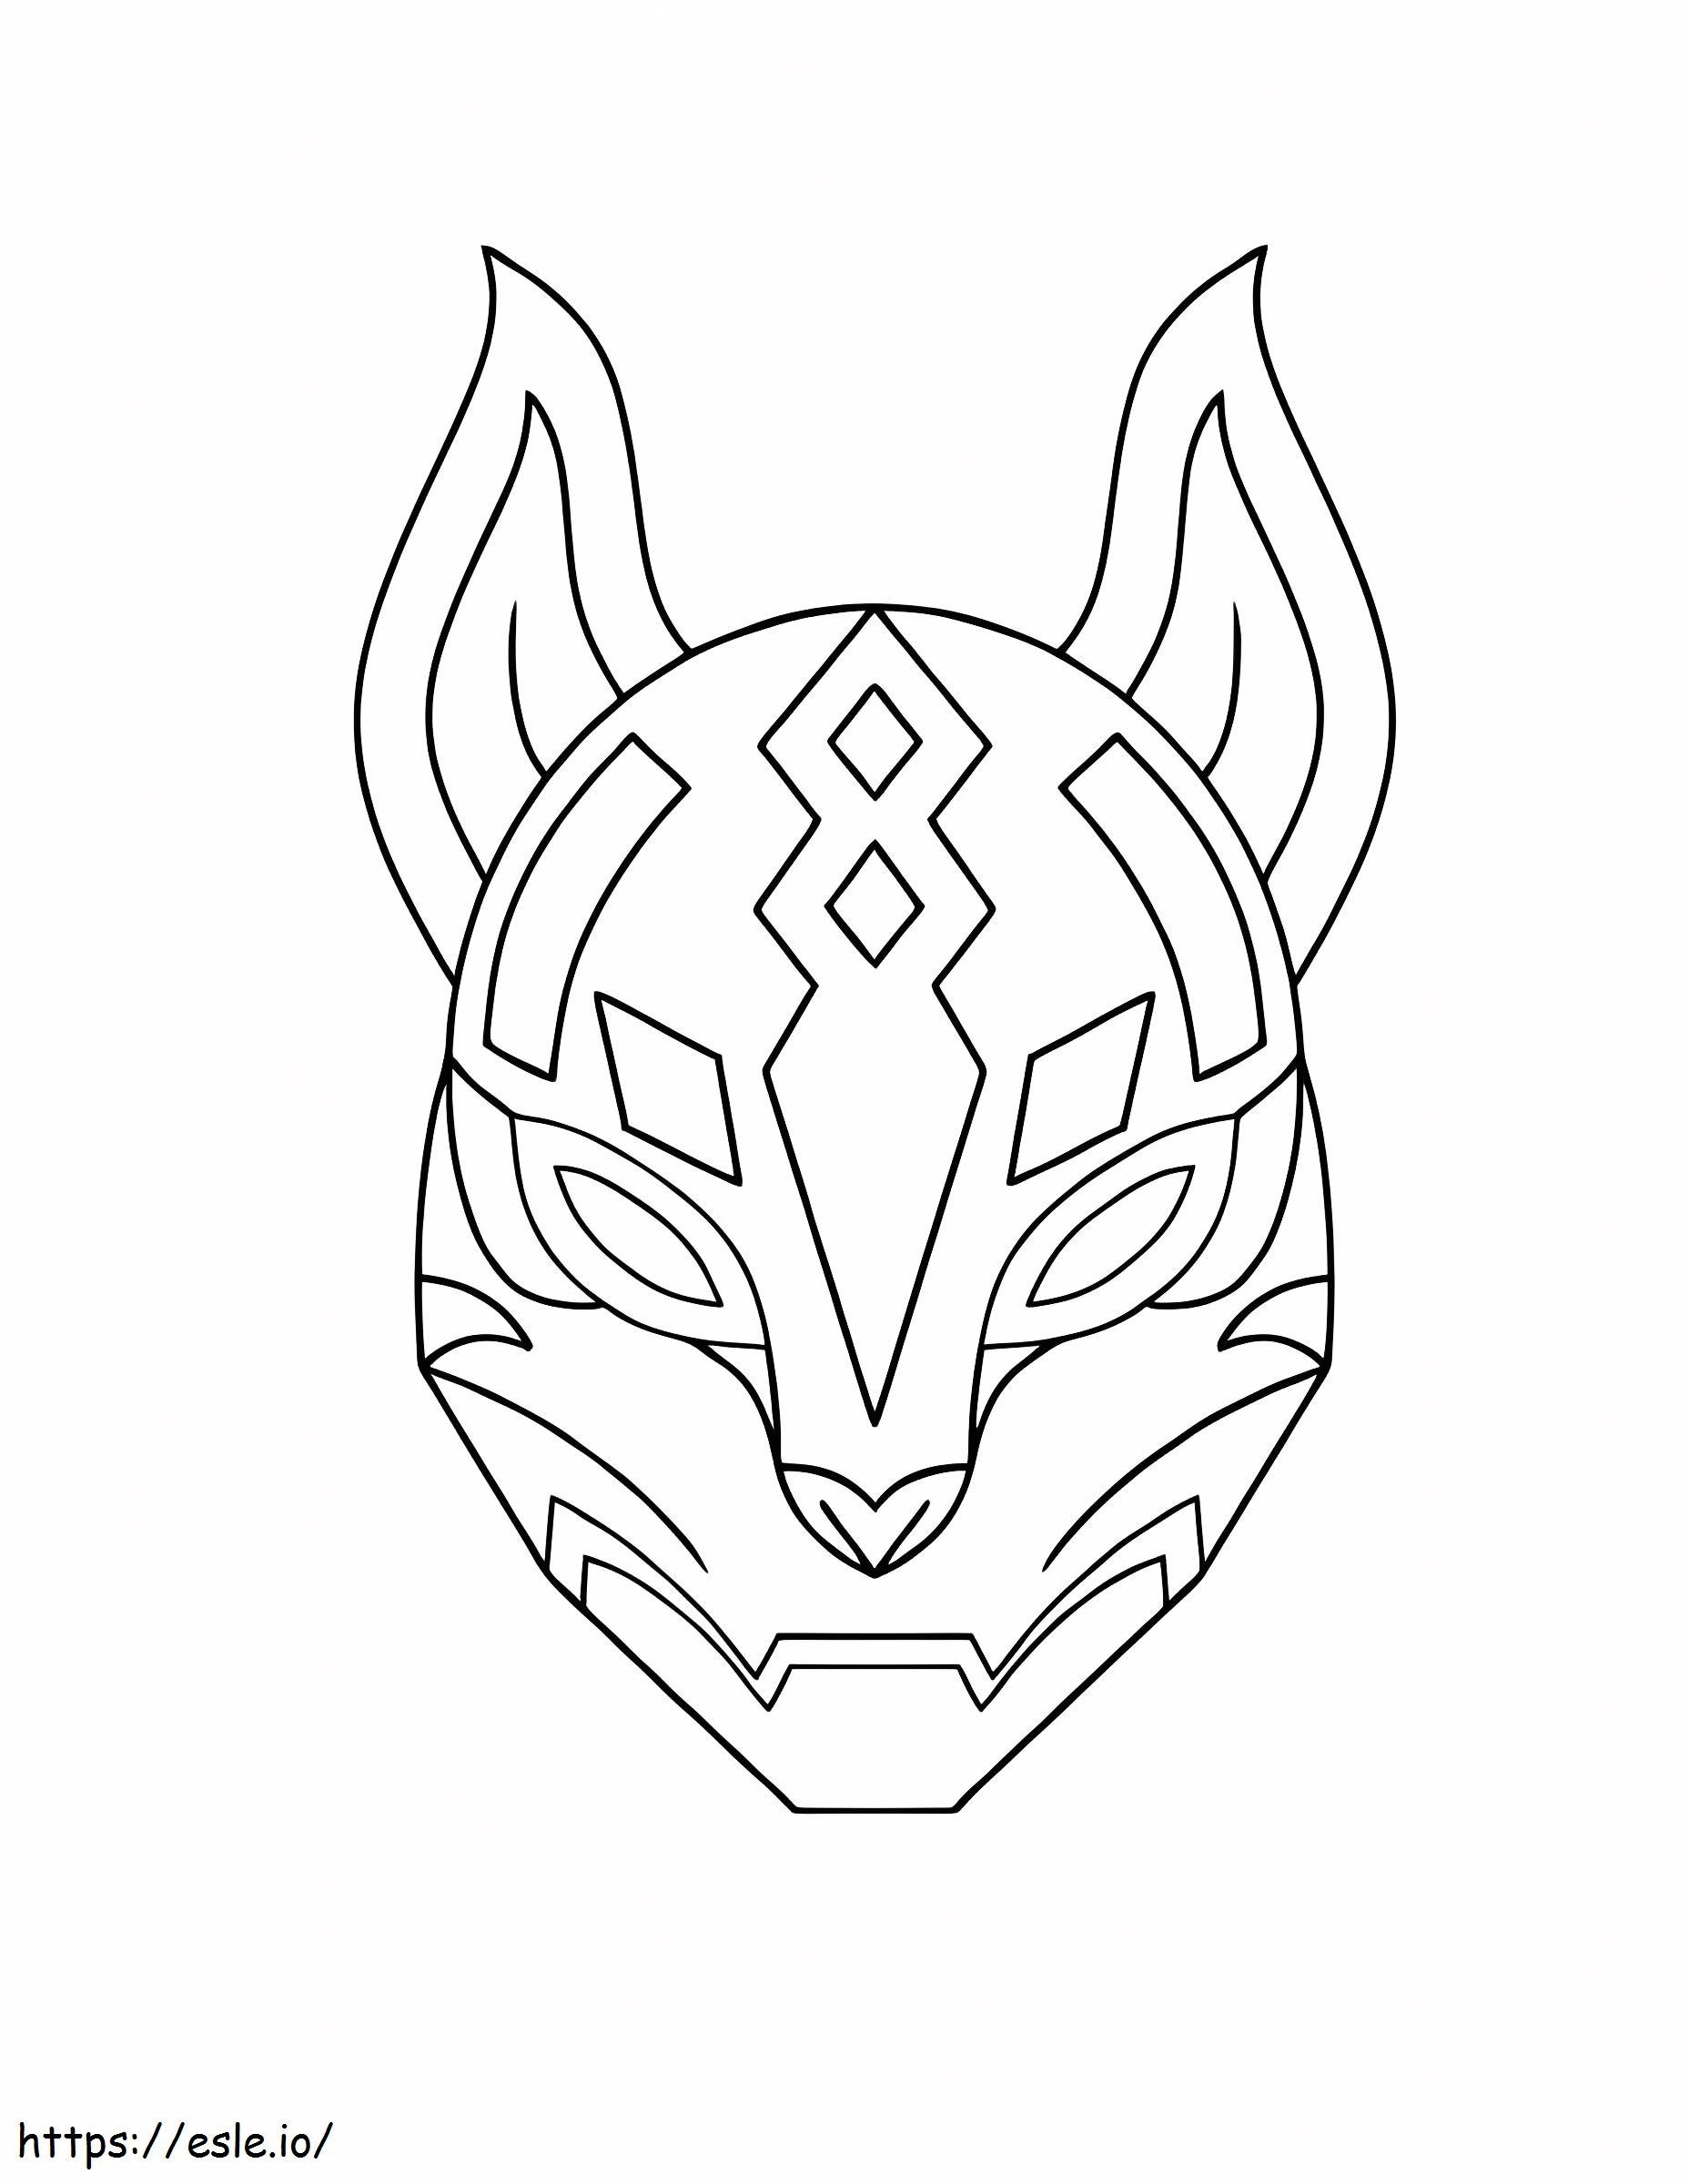 Máscara Kitsune básica para colorear